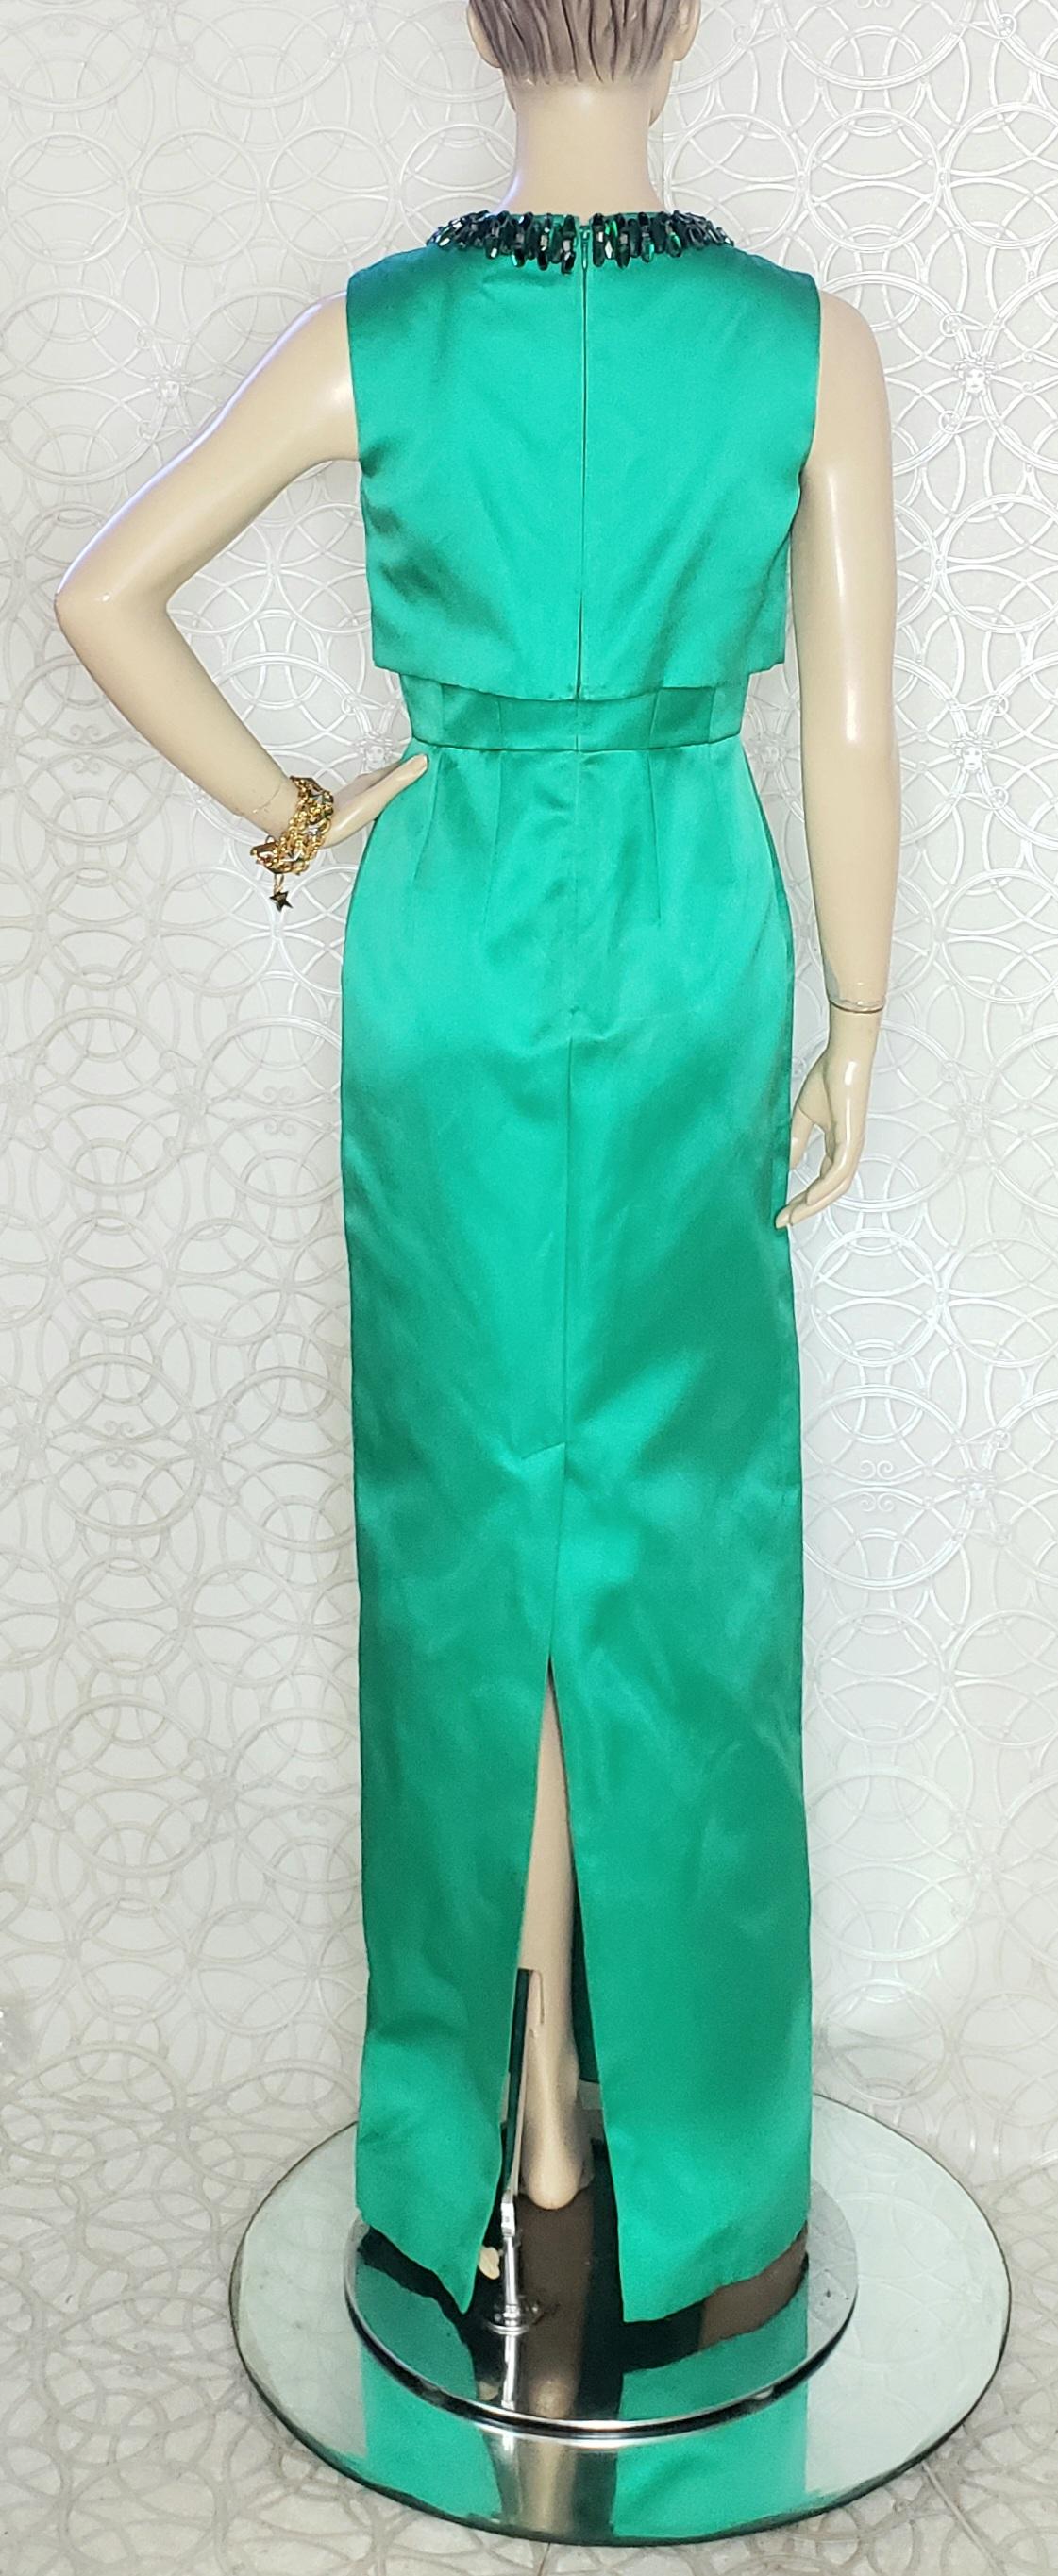 Green NEW ALEXANDER McQueen GREEN EVENING DRESS size 40 - 4 For Sale